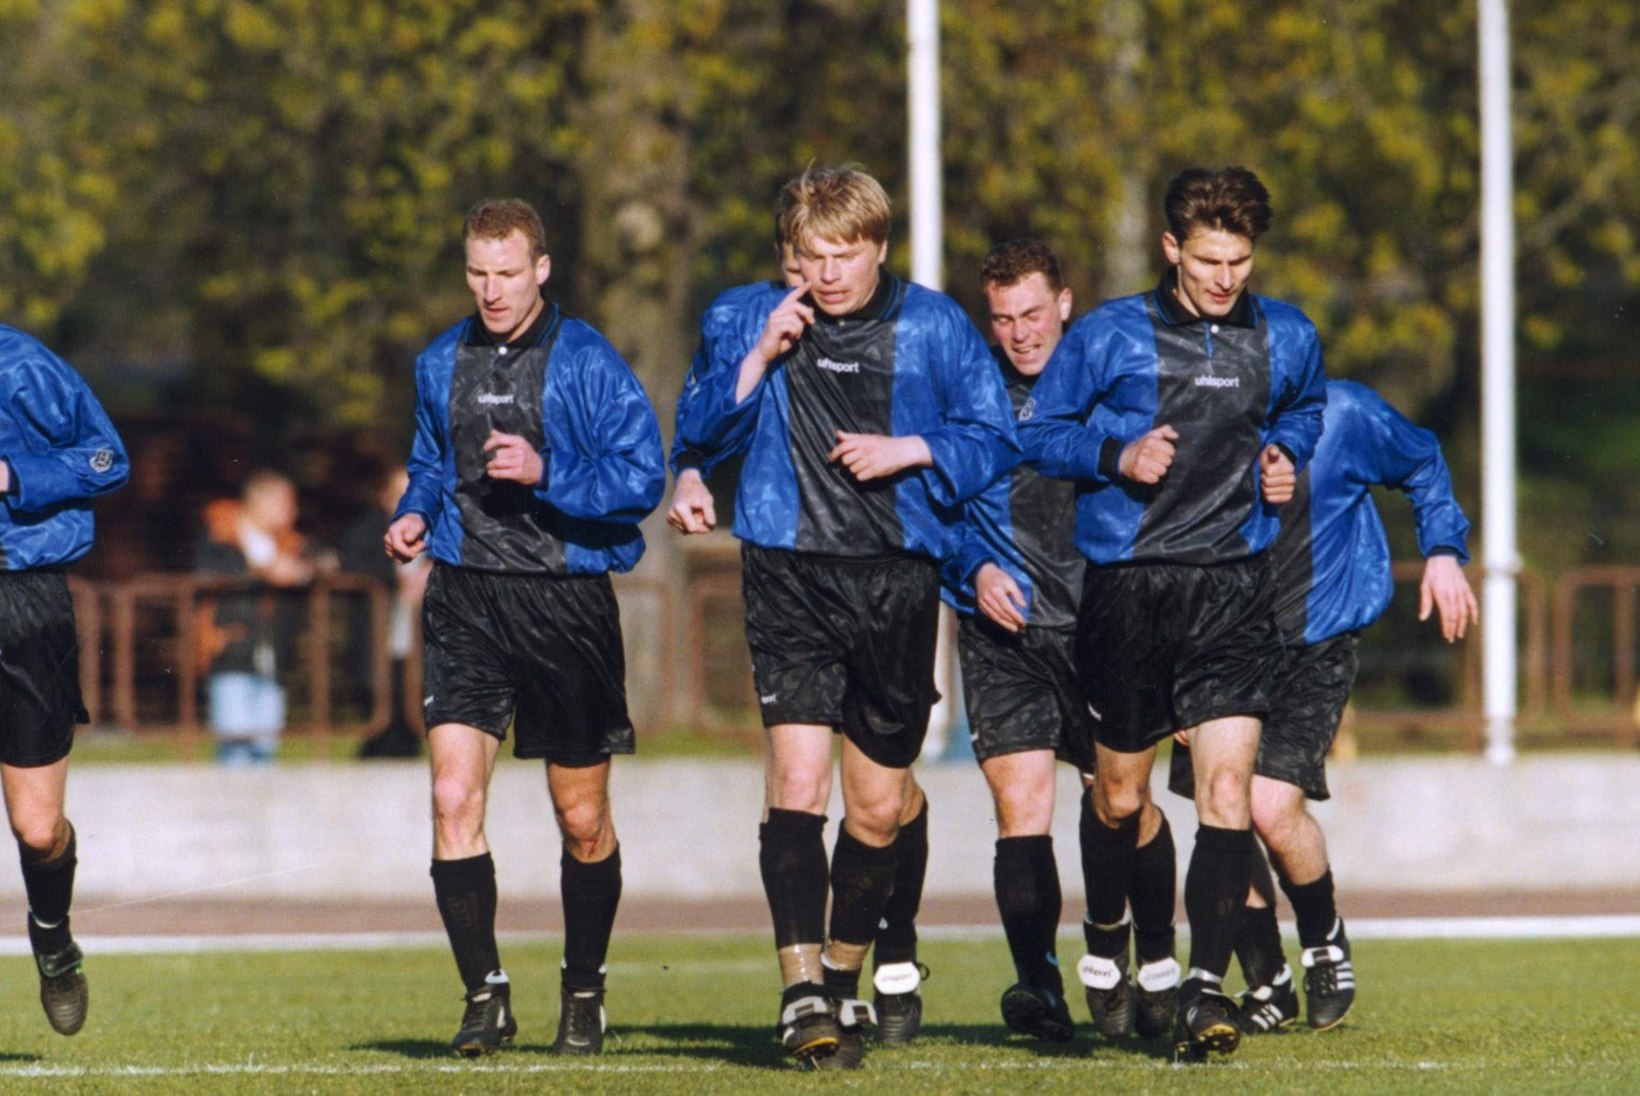 Jalgpalli Eesti kõrgliigas mängivad 2015. aastal seitsme linna meeskonnad. Kas see on rekord?